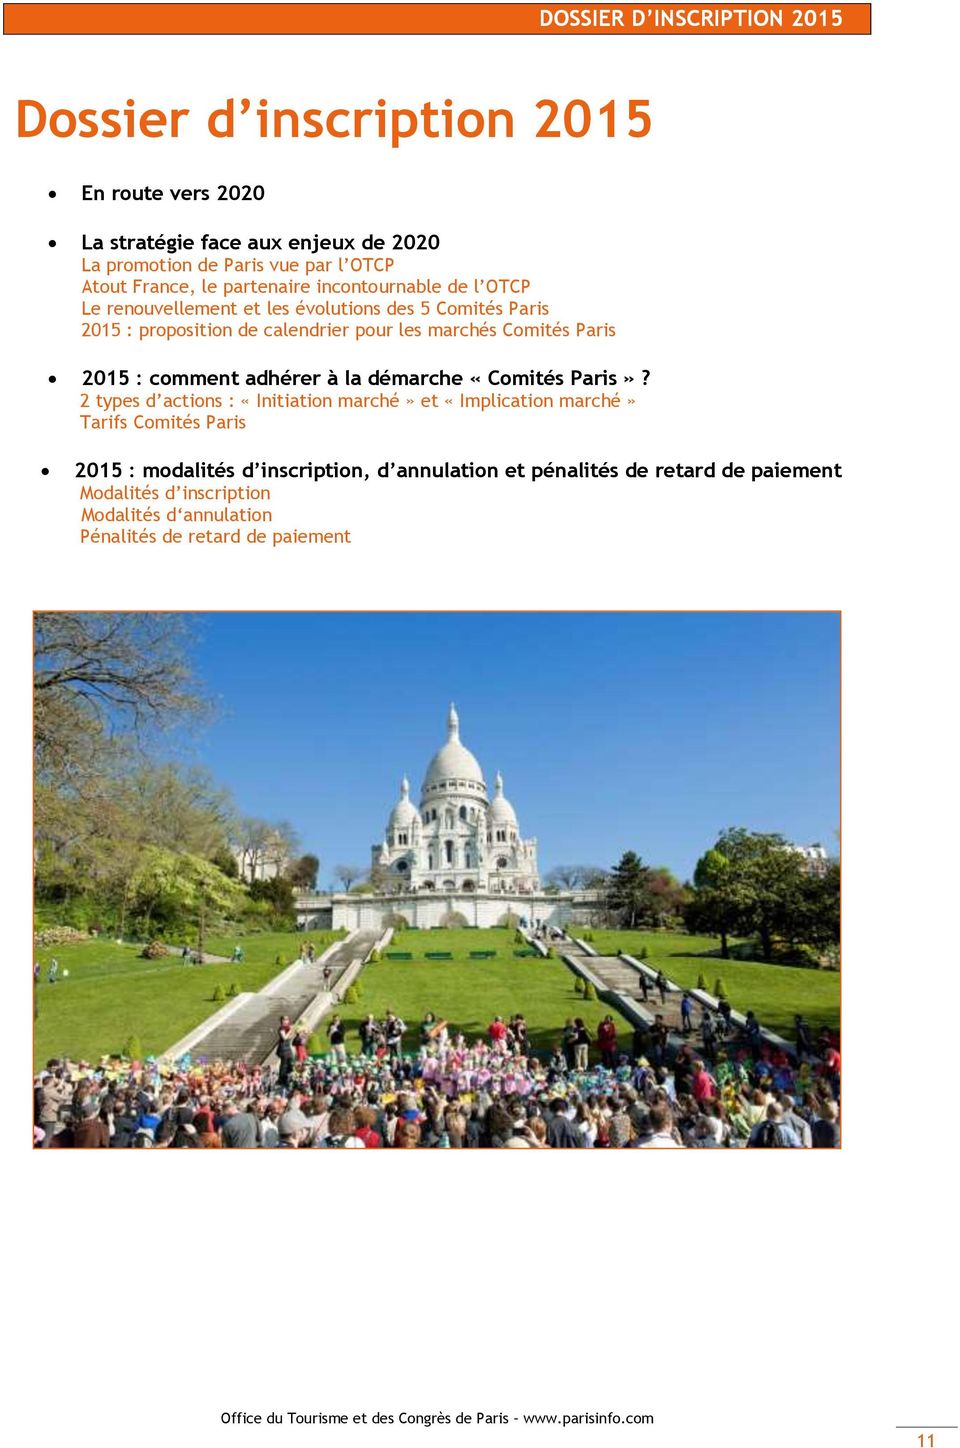 Comités Paris 2015 : comment adhérer à la démarche «Comités Paris»?